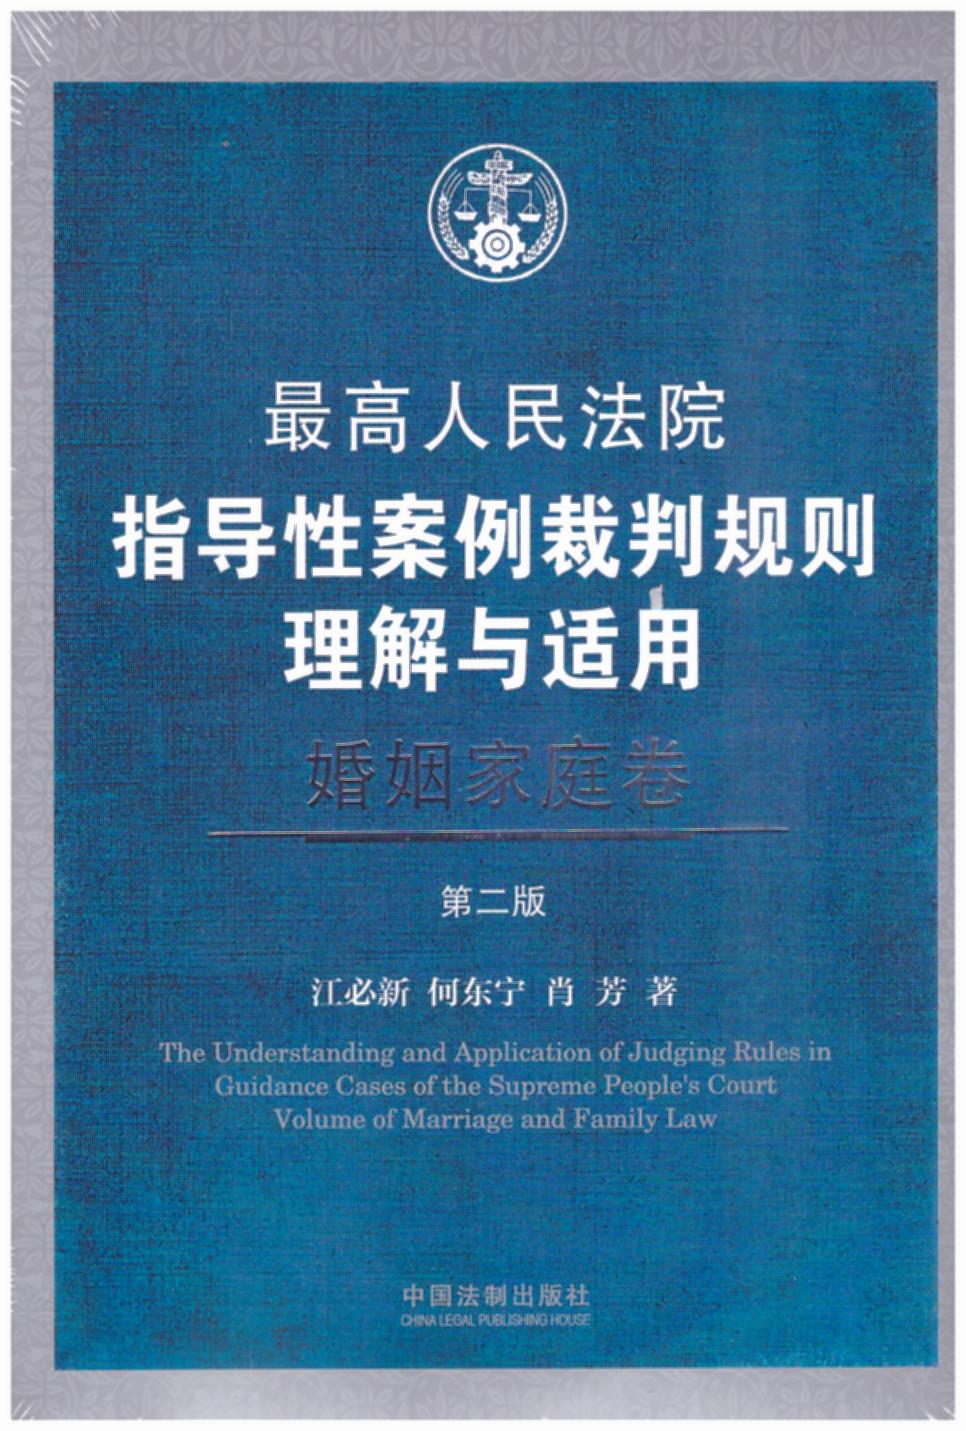 最高人民法院指导性案例裁判规则理解与适用·婚姻家庭卷【第2版